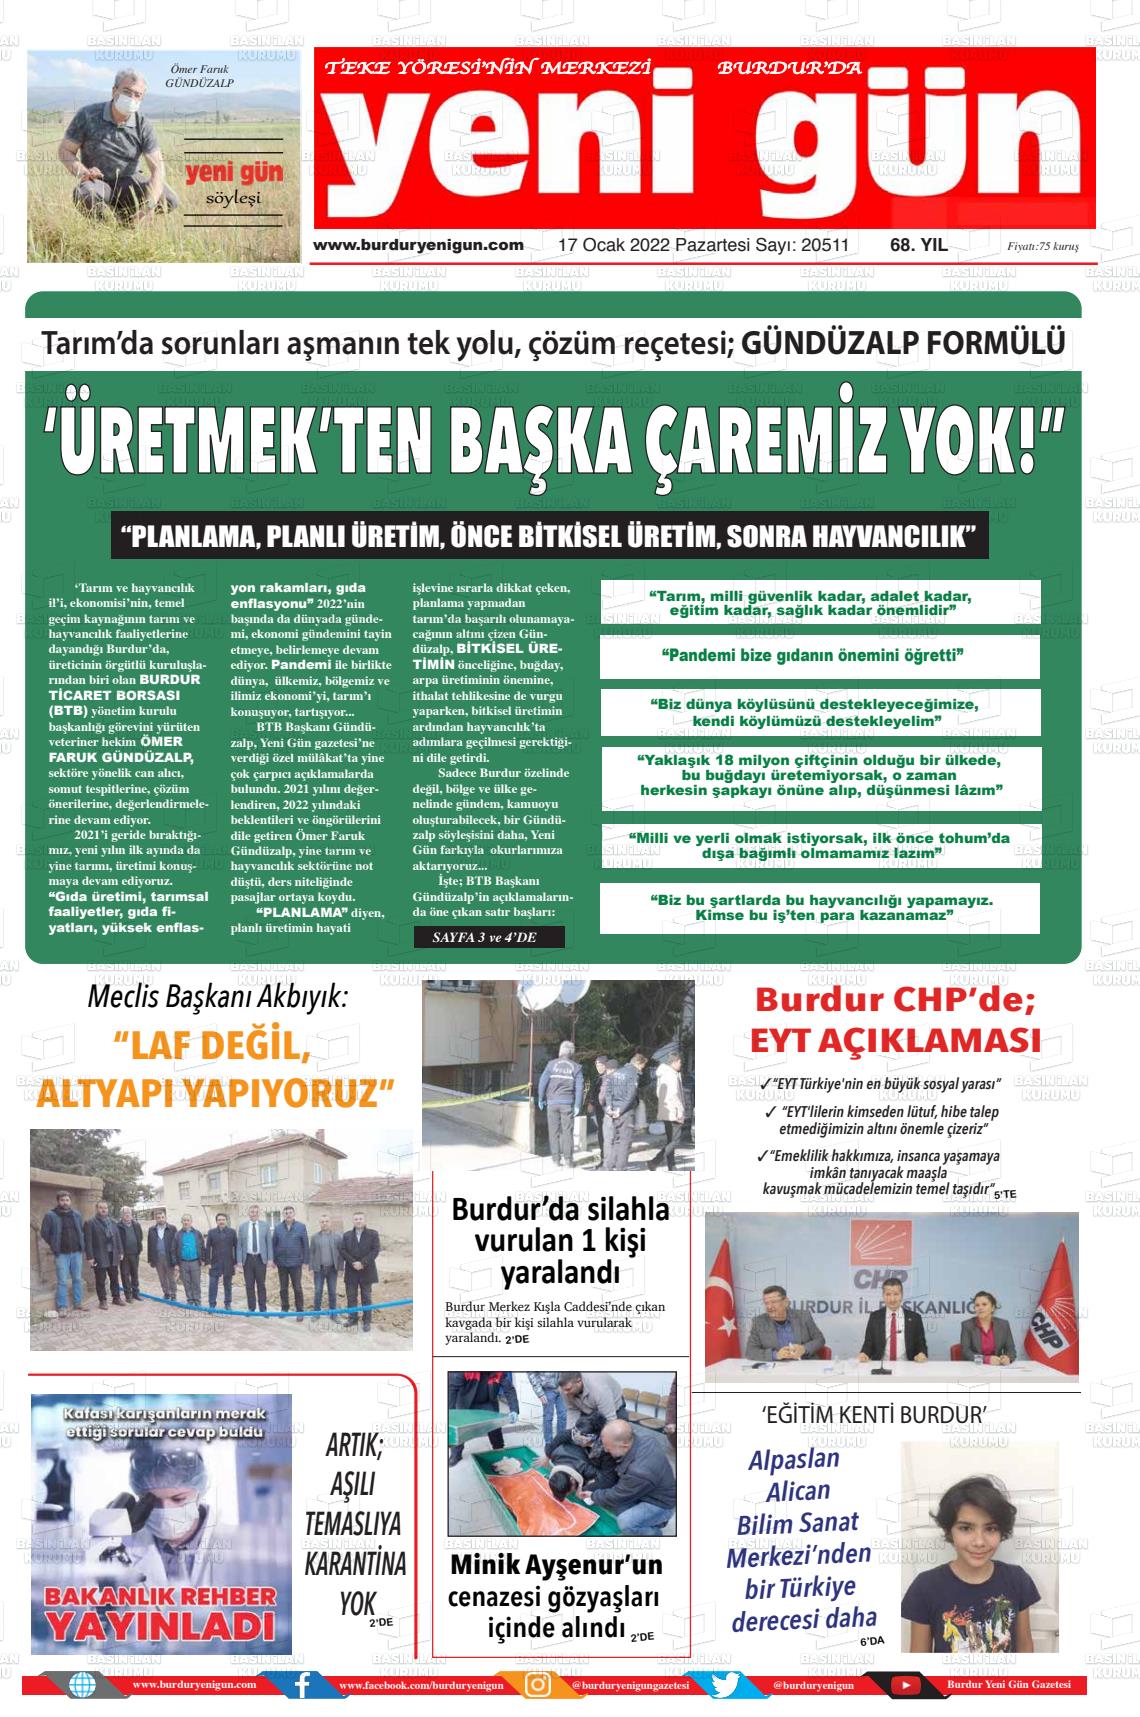 17 Ocak 2022 Burdur Yeni Gün Gazete Manşeti